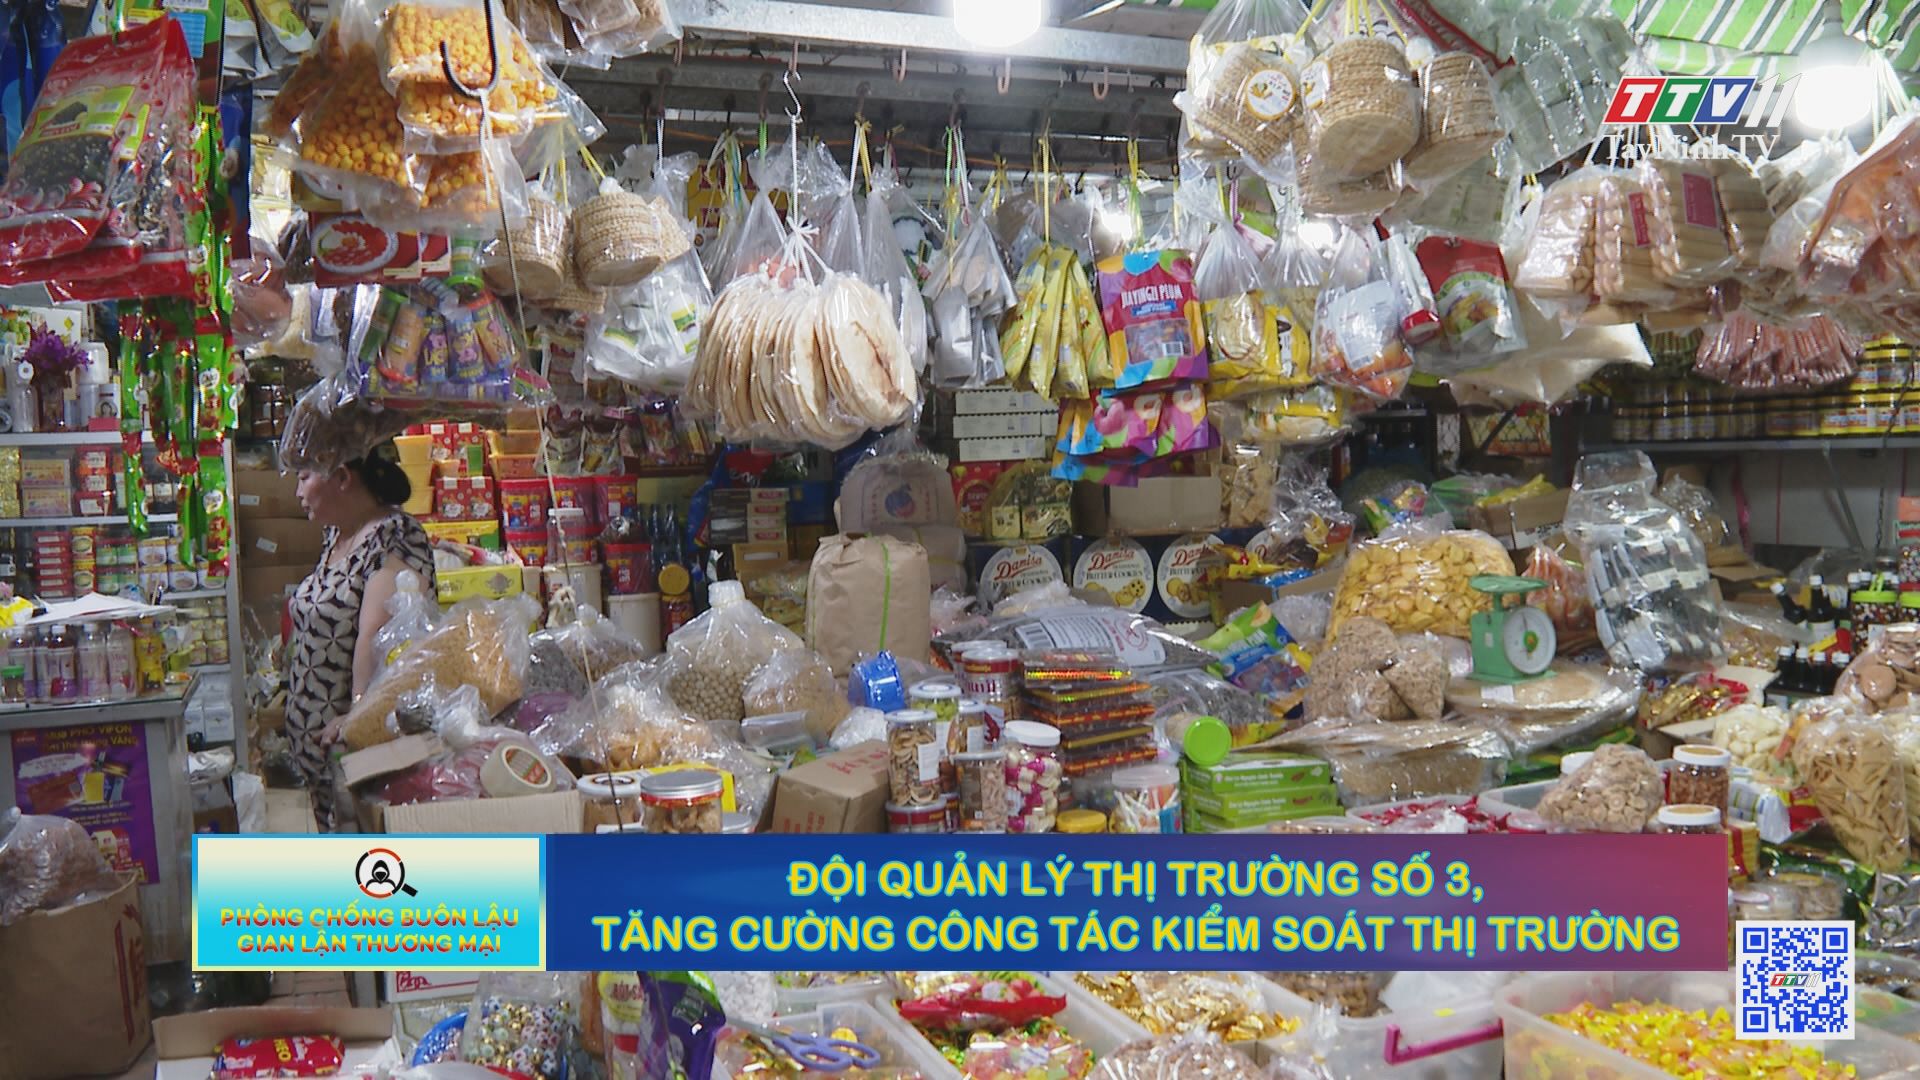 Đội Quản lý thị trường số 3, tăng cường công tác kiểm soát thị trường | Phòng chống buôn lậu và gian lận thương mại | TayNinhTV